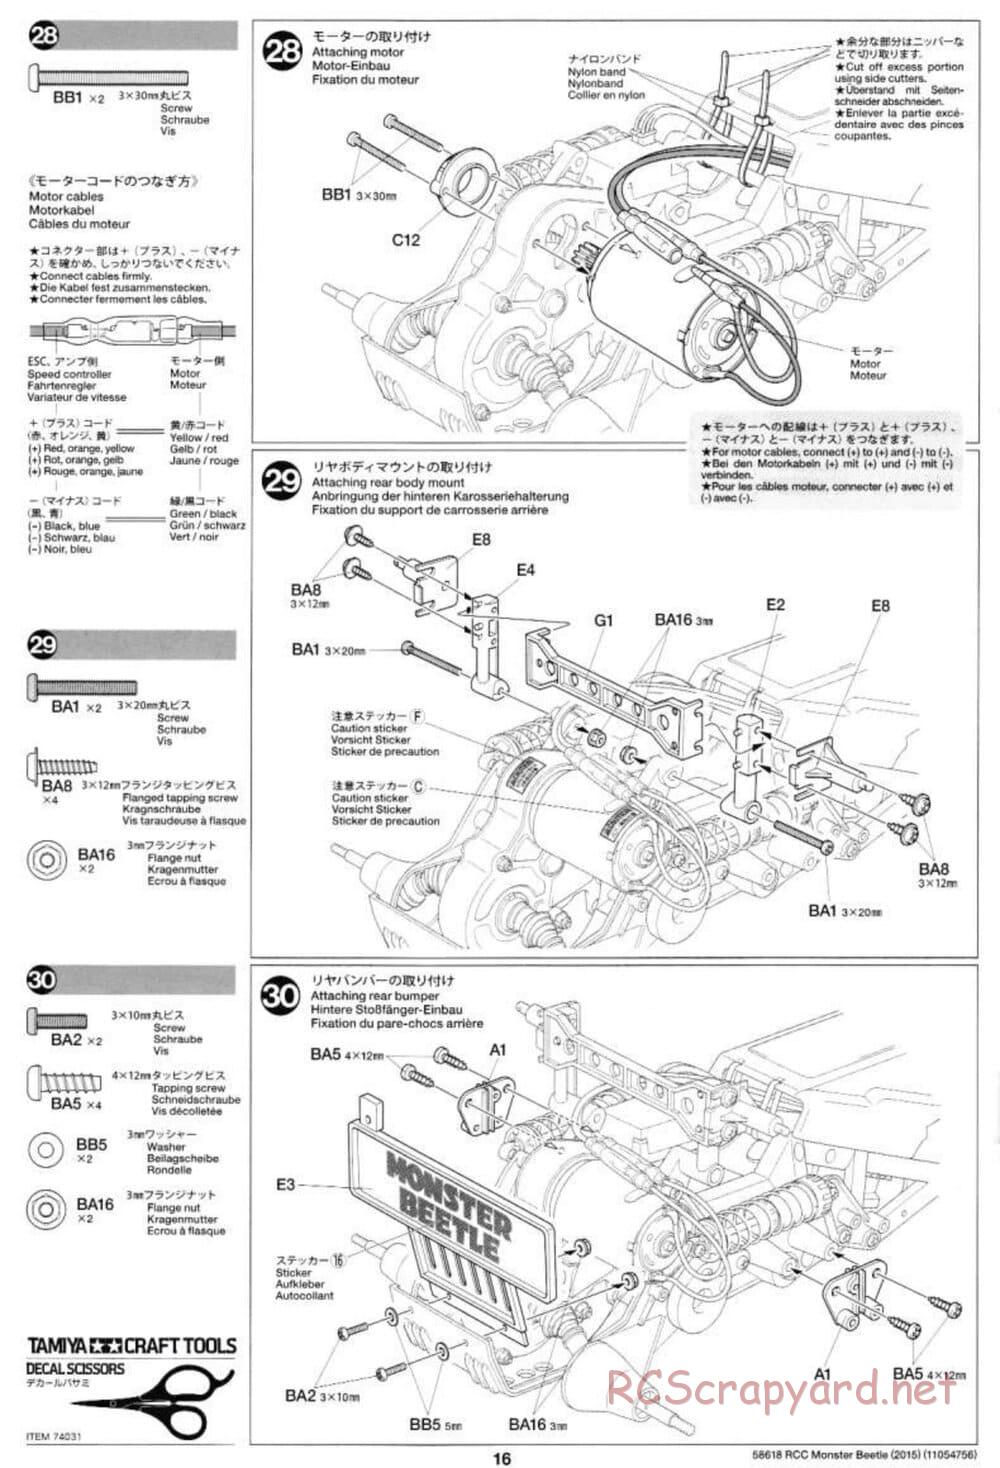 Tamiya - Monster Beetle 2015 - ORV Chassis - Manual - Page 16